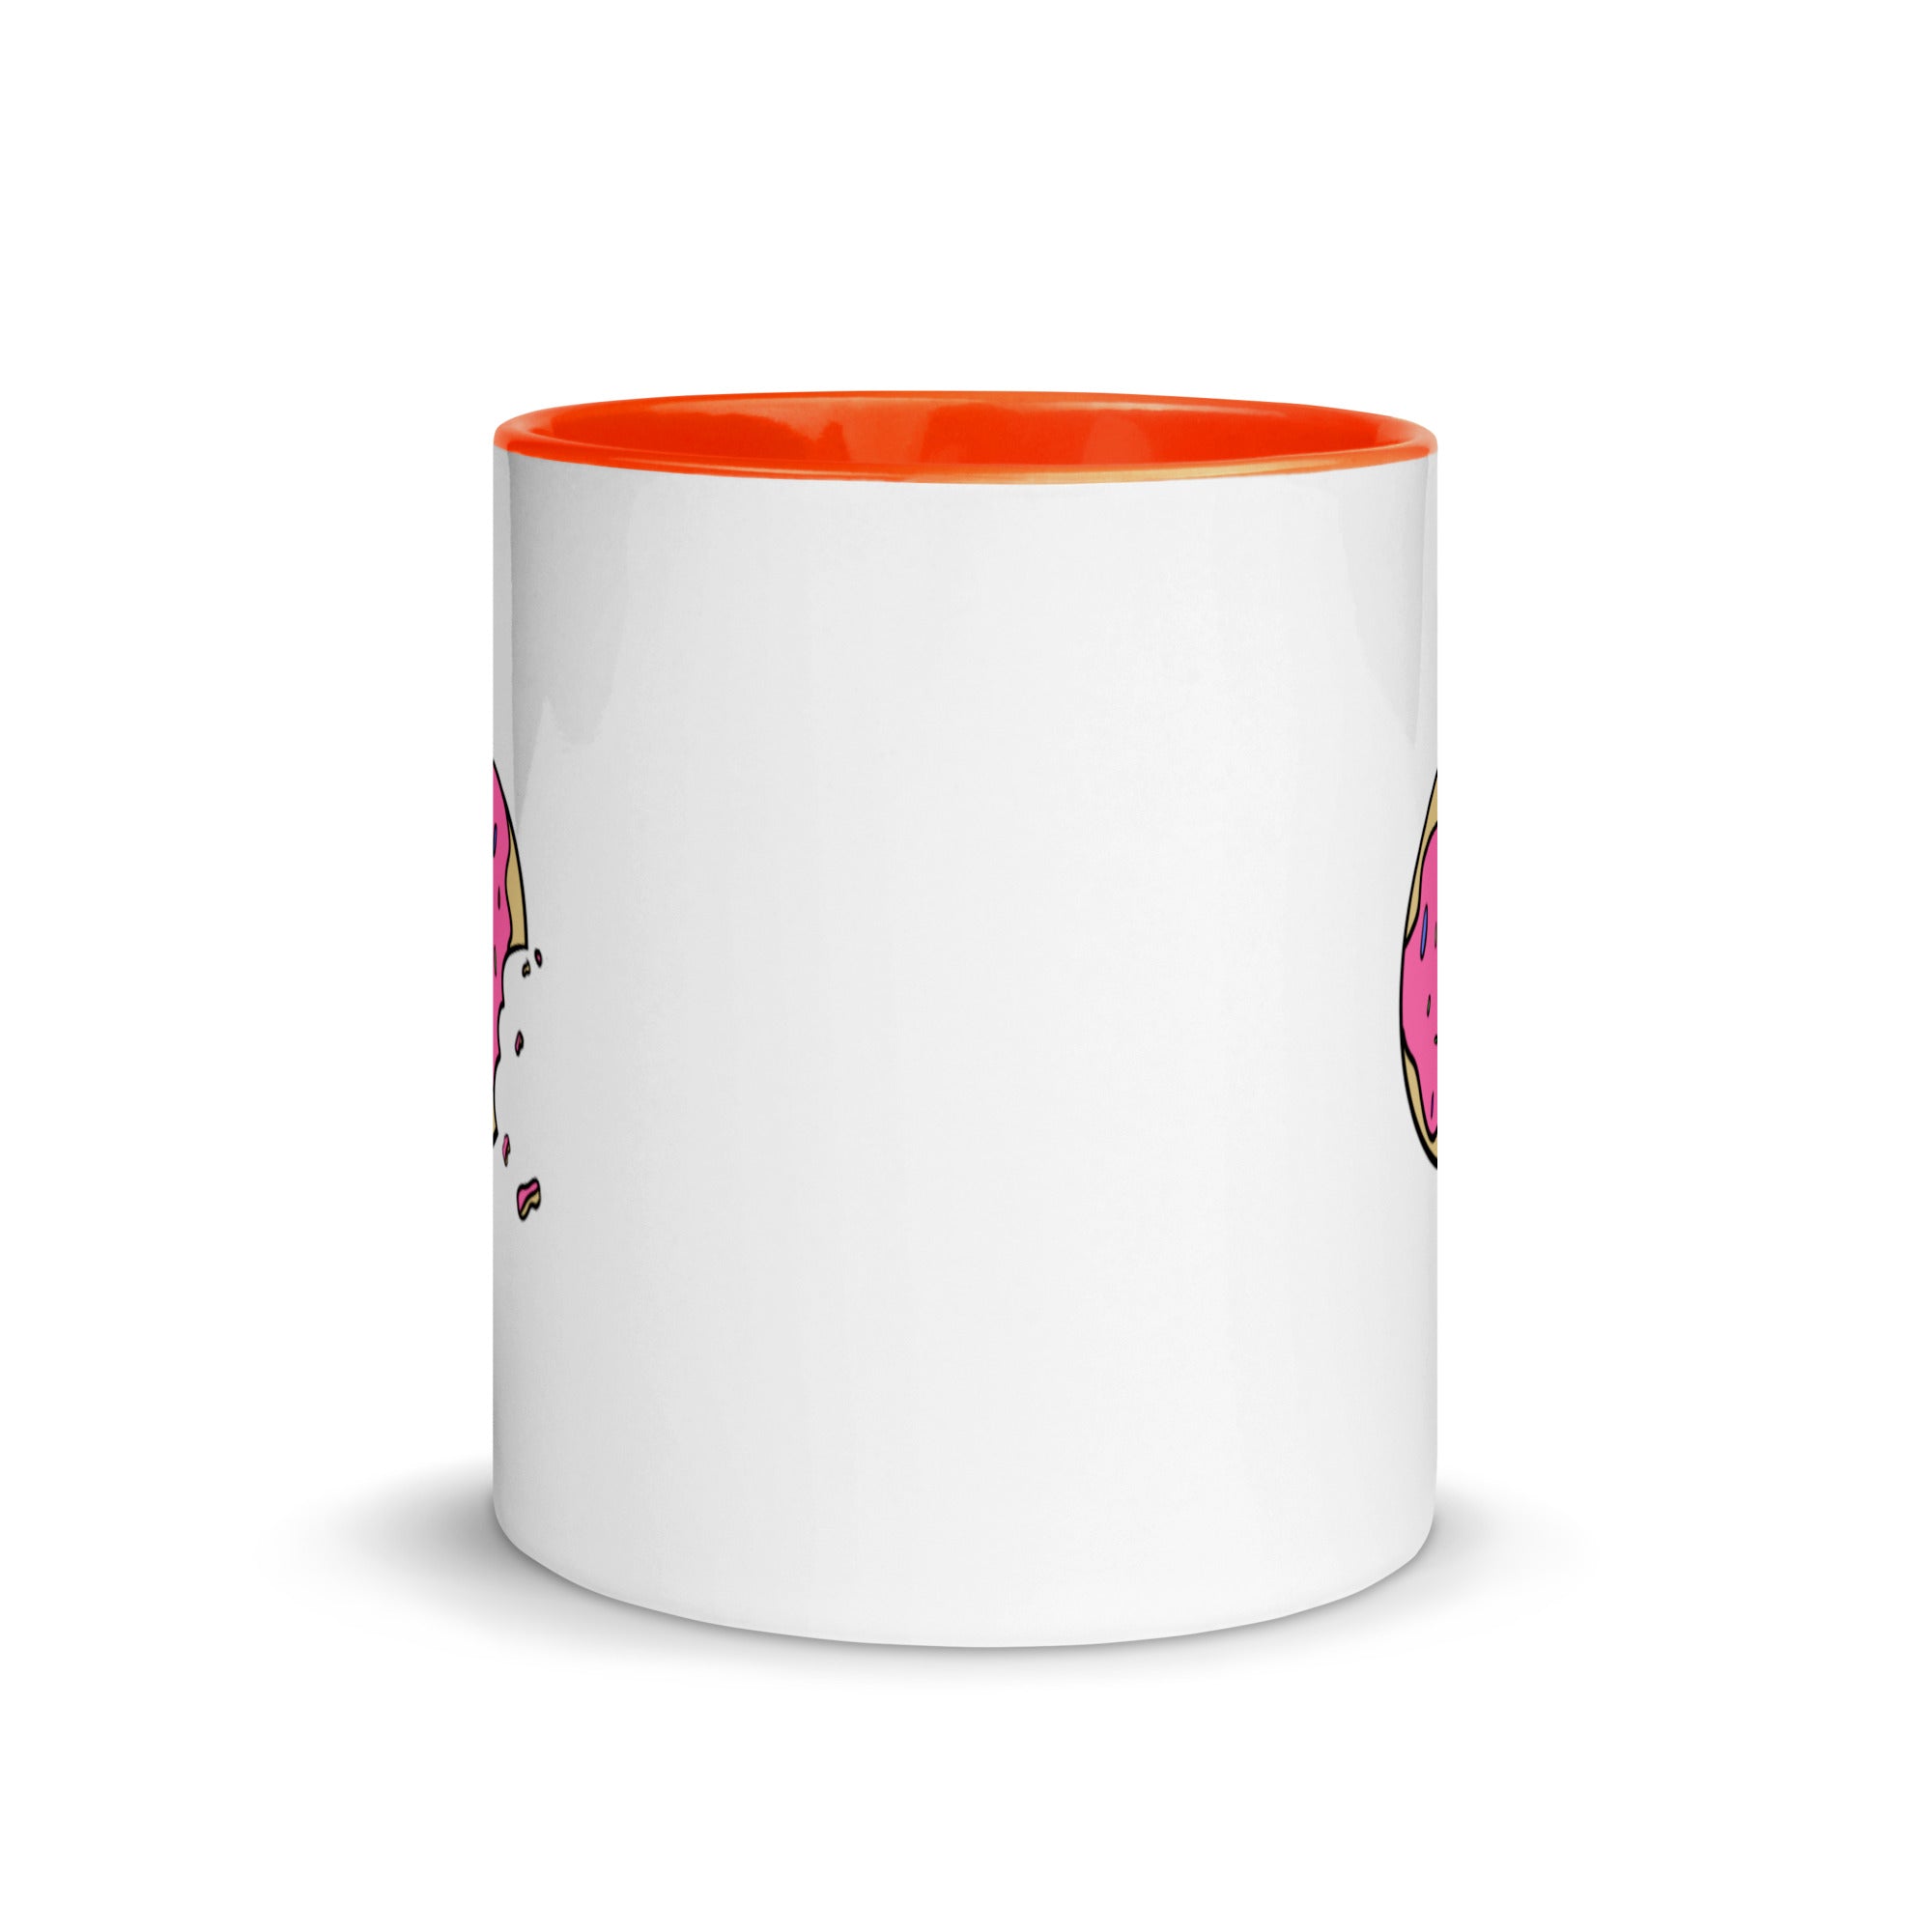 Donut - Mug with Color Inside